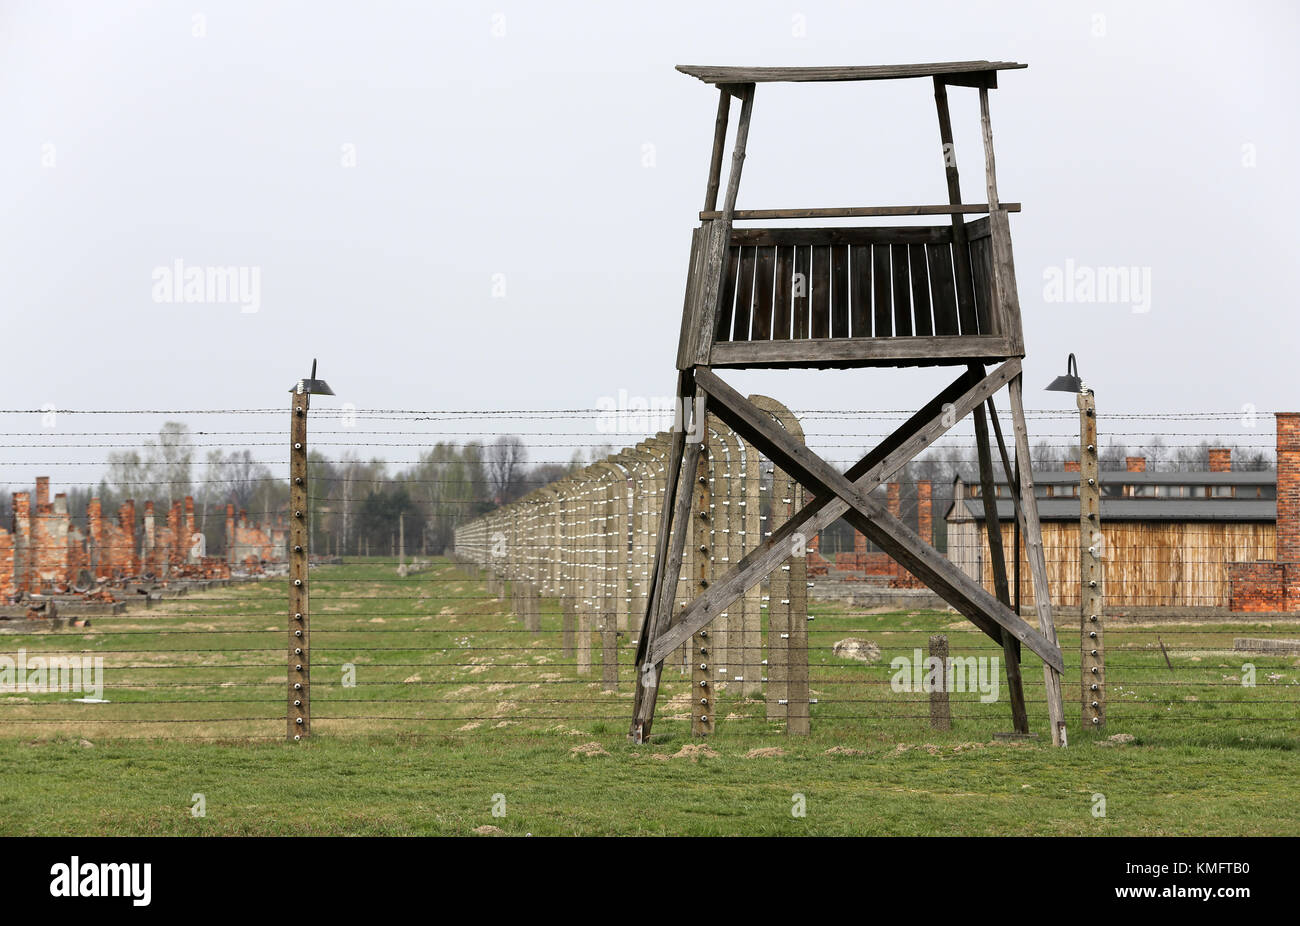 Ii di Auschwitz Birkenau. Polonia. il più grande campo di concentramento nazista in Europa e ora il museo di stato AUSCHWITZ-BIRKENAU. Foto Stock